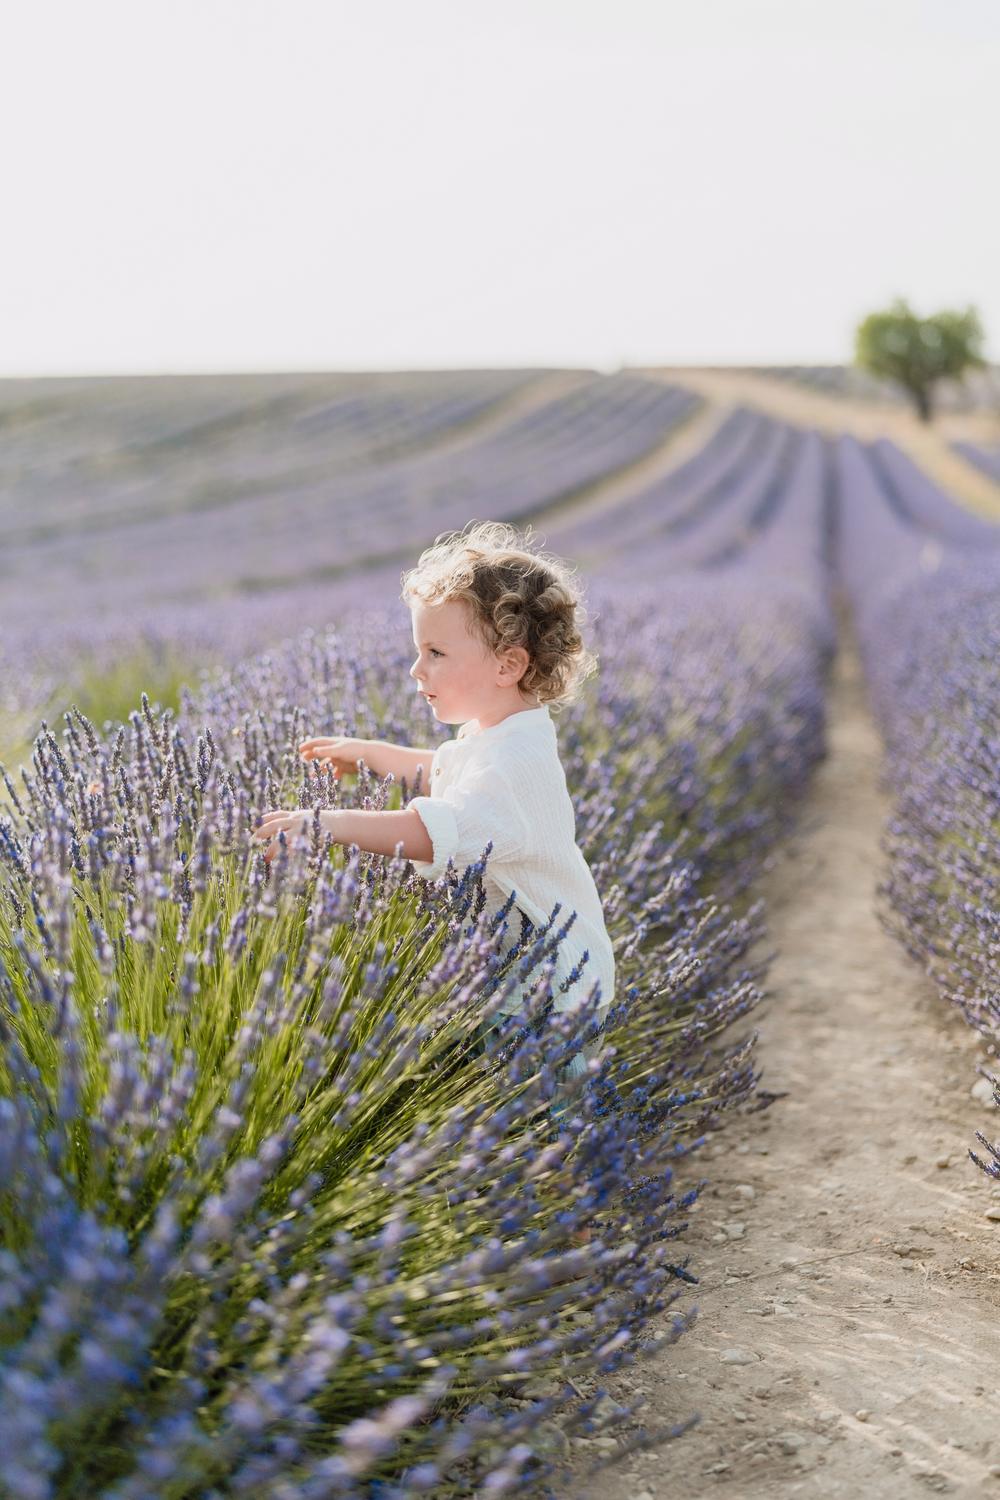 Provence Family Trip. Lavande fields, Gorge du Verdon, Moustier Sainte Marie